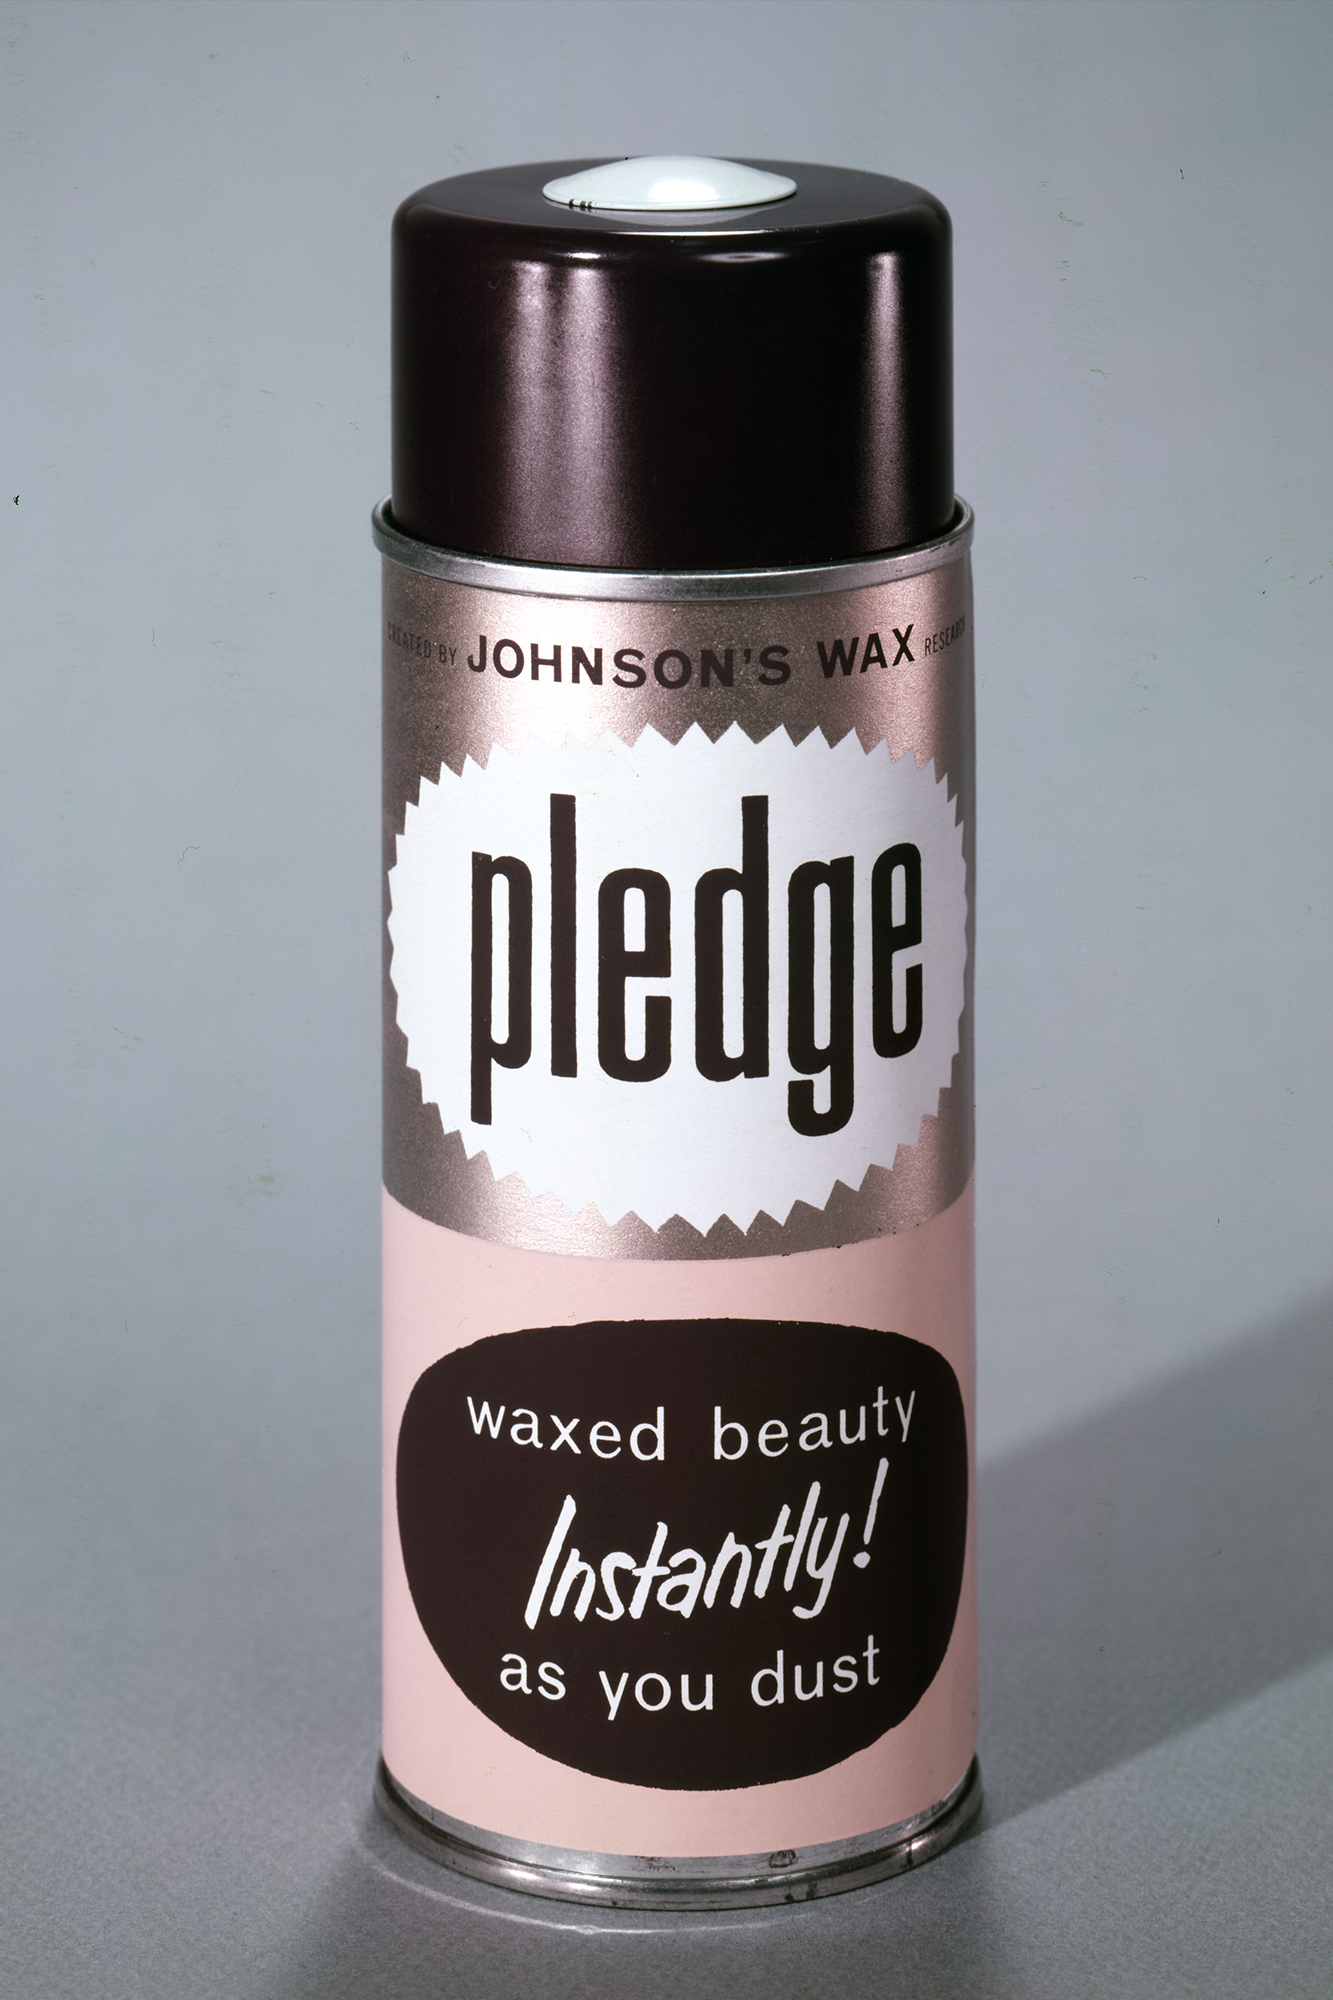 Johnson’s Wax 在 1958 年的 Pledge 家具亮光剂原版广告